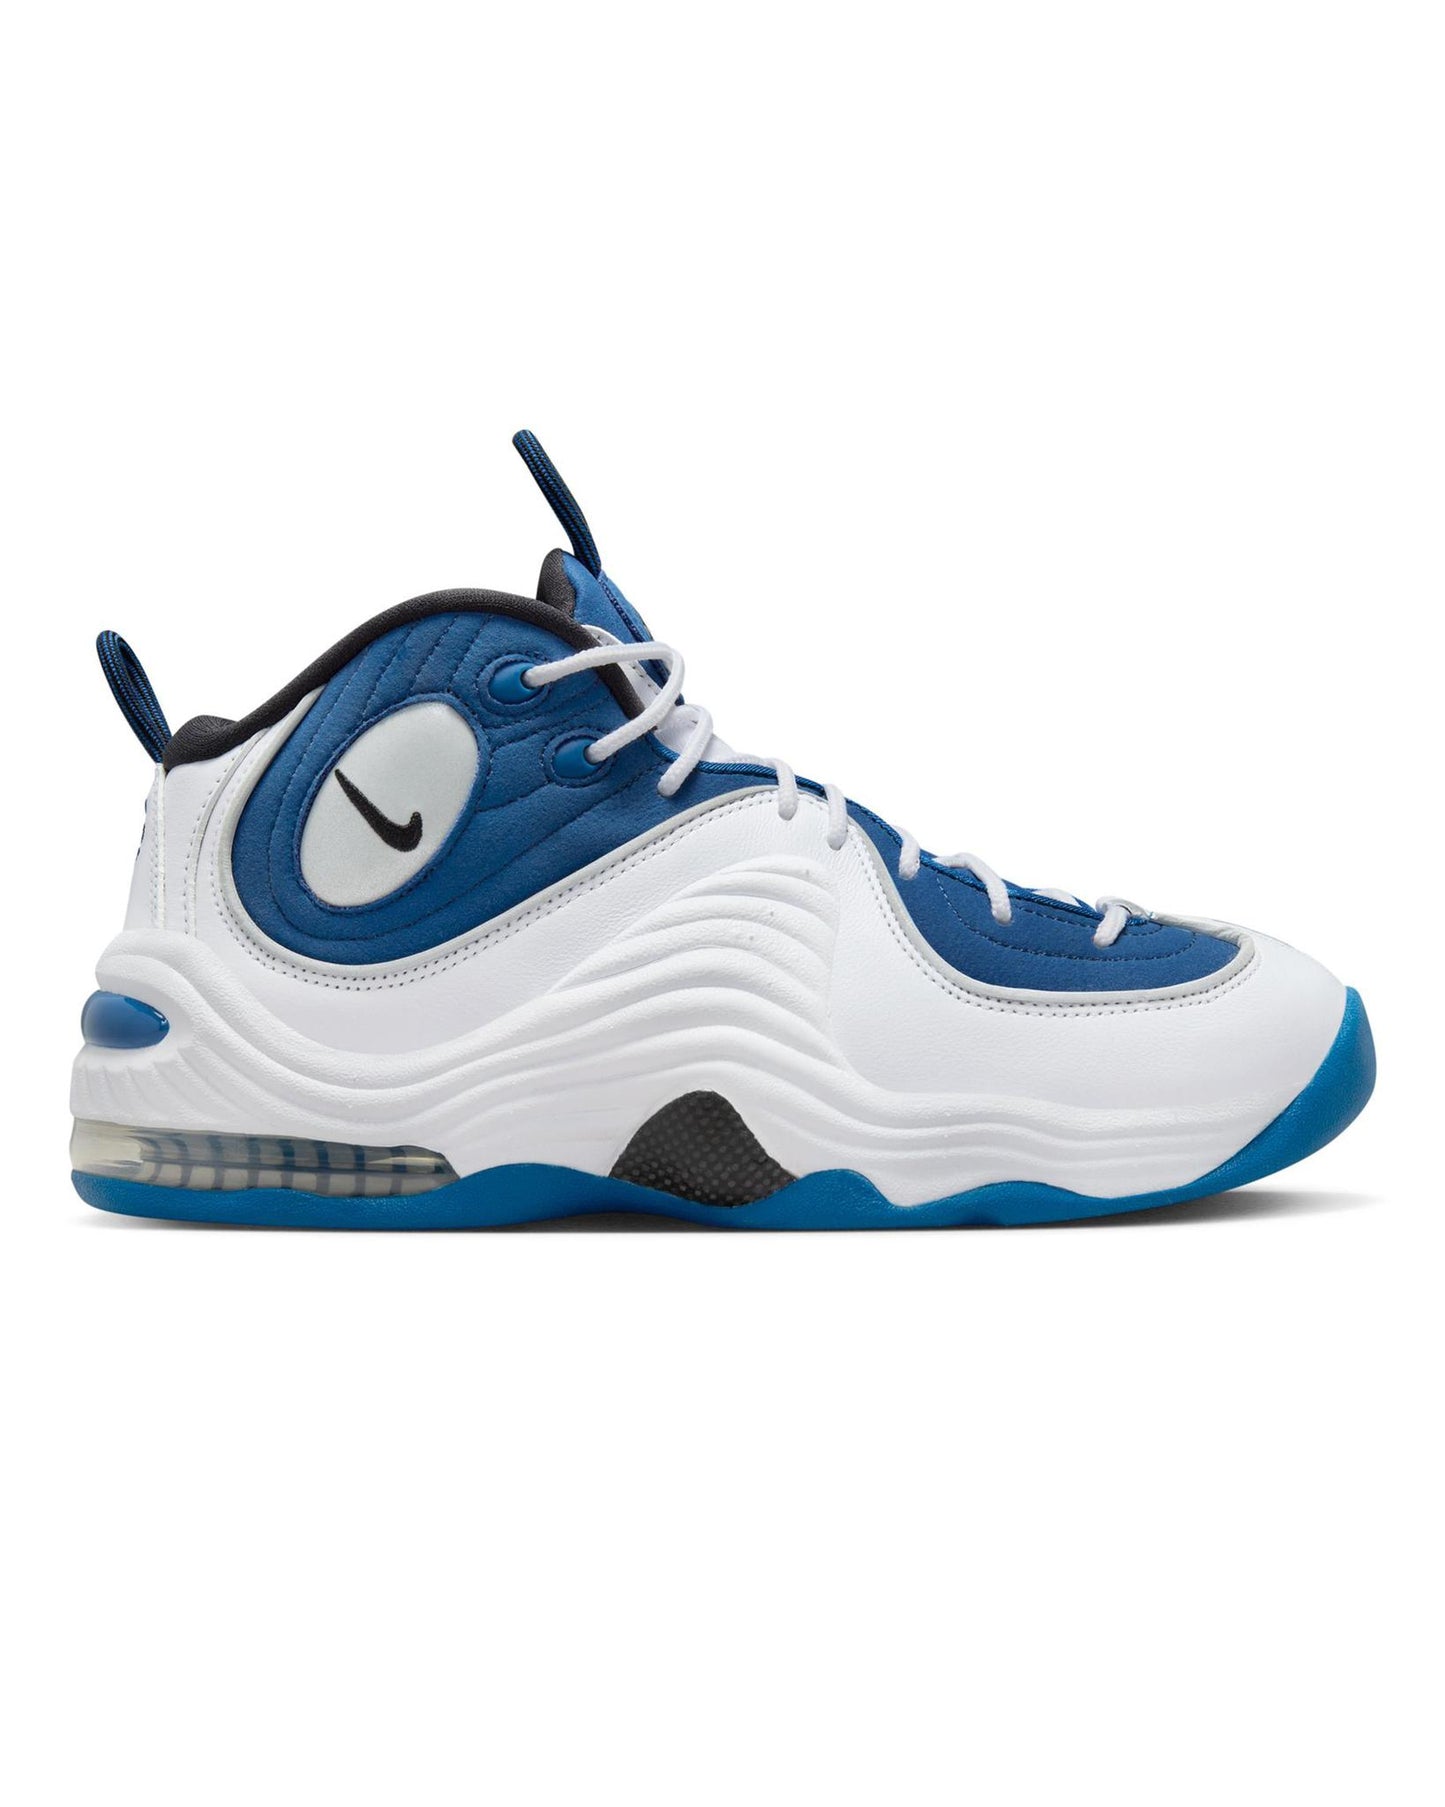 
                    
                      Nike Air Penny 2 "Atlantic Blue" QS
                    
                  